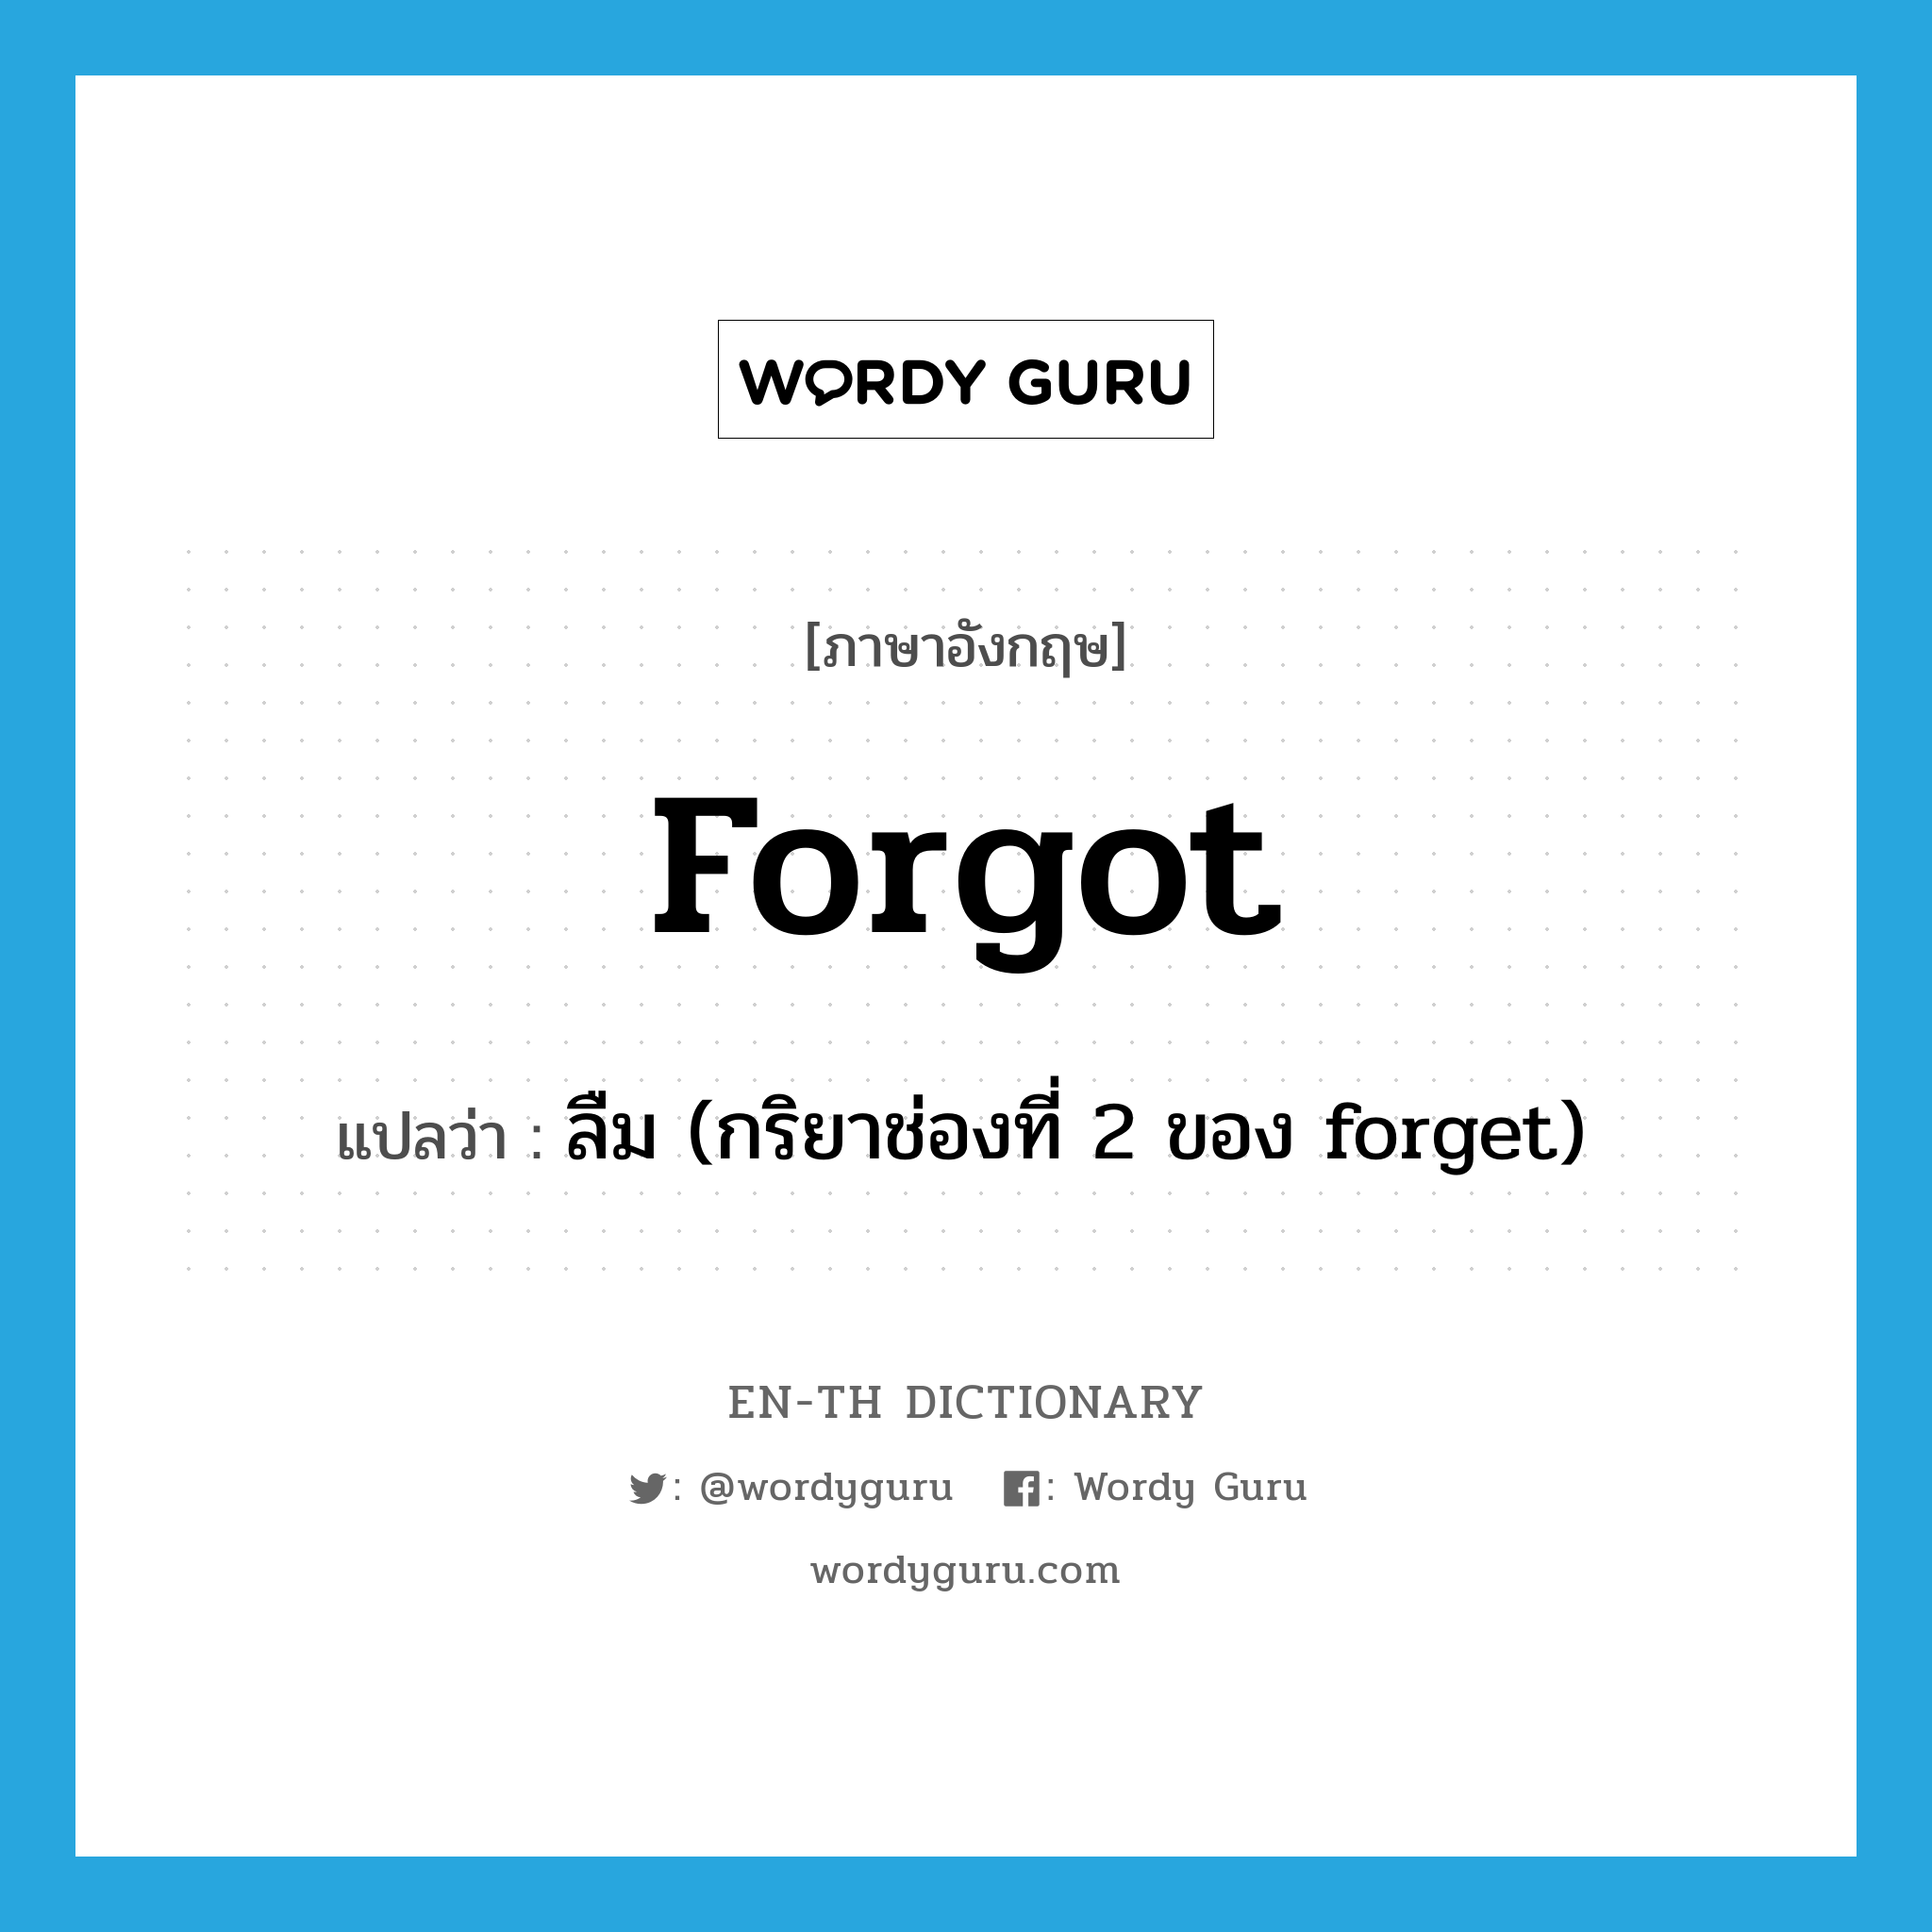 ลืม (กริยาช่องที่ 2 ของ forget) ภาษาอังกฤษ?, คำศัพท์ภาษาอังกฤษ ลืม (กริยาช่องที่ 2 ของ forget) แปลว่า forgot ประเภท VT หมวด VT